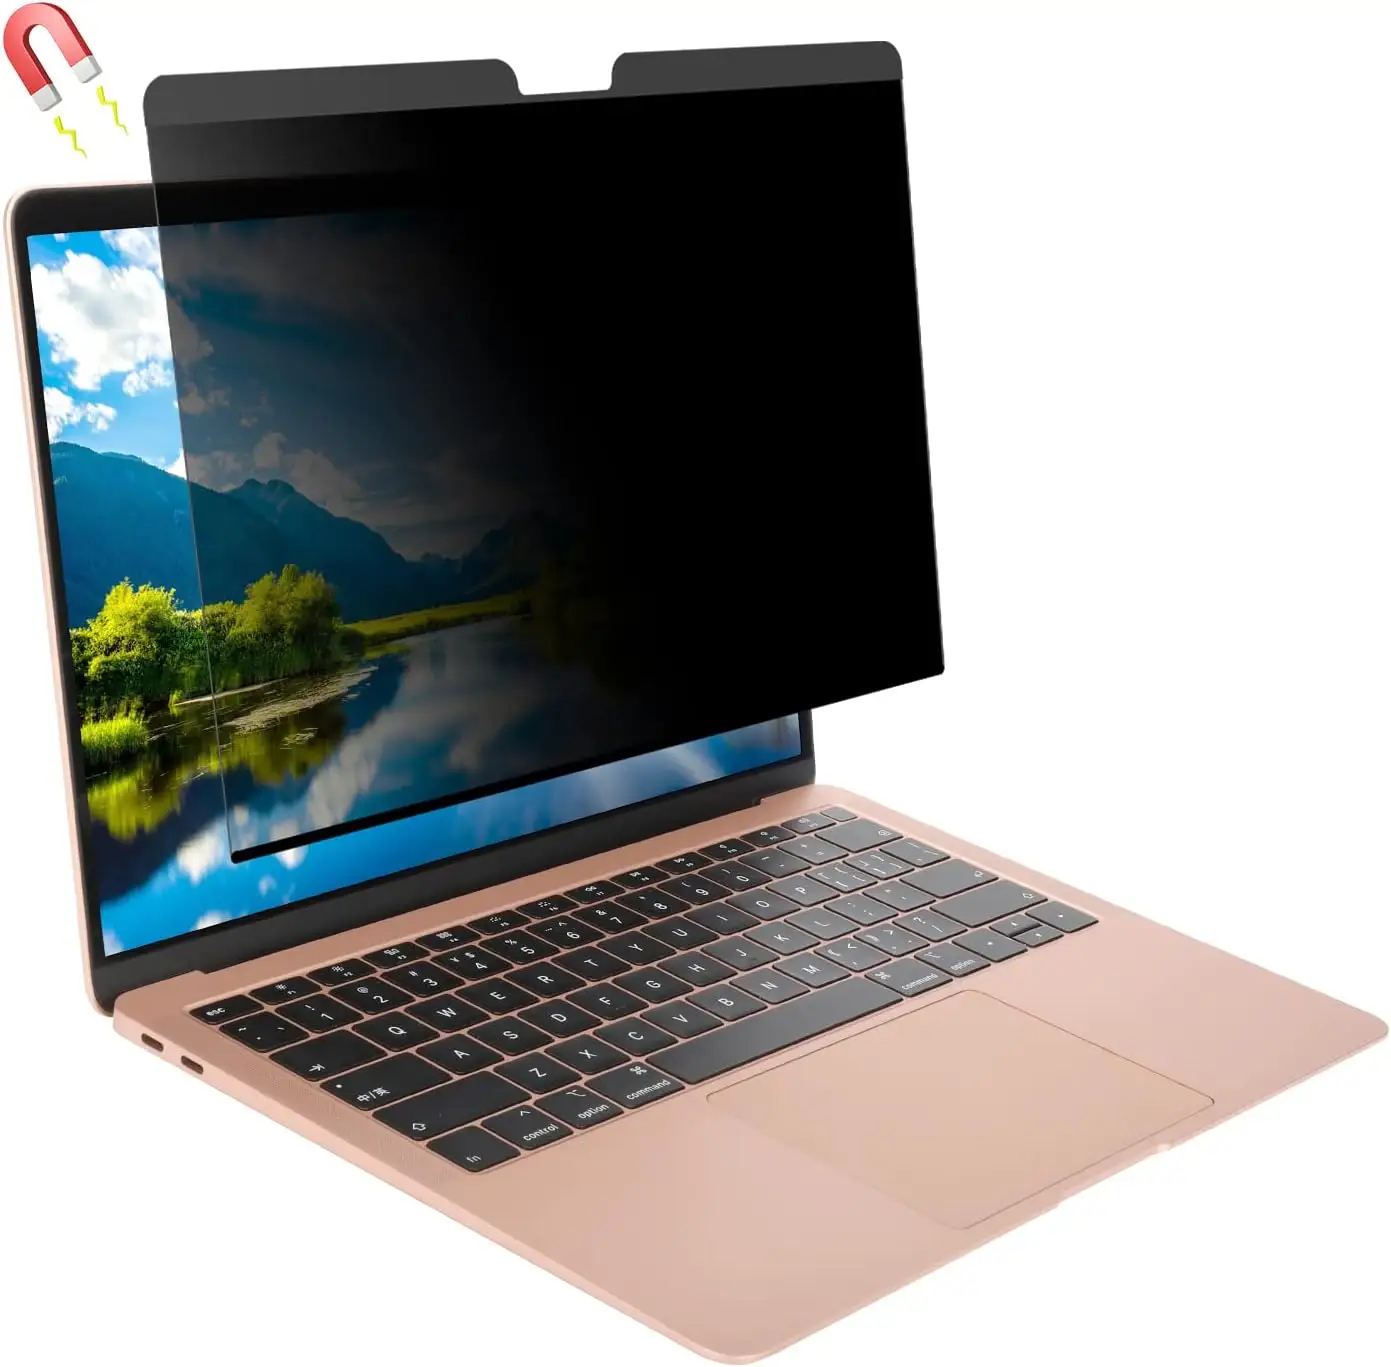 Großhandels preis Laptop Datenschutz filter Abnehmbare Anti-Spion-Displays chutz folie für Macbook 14,2-Zoll-Datenschutzfolie mit Magnet